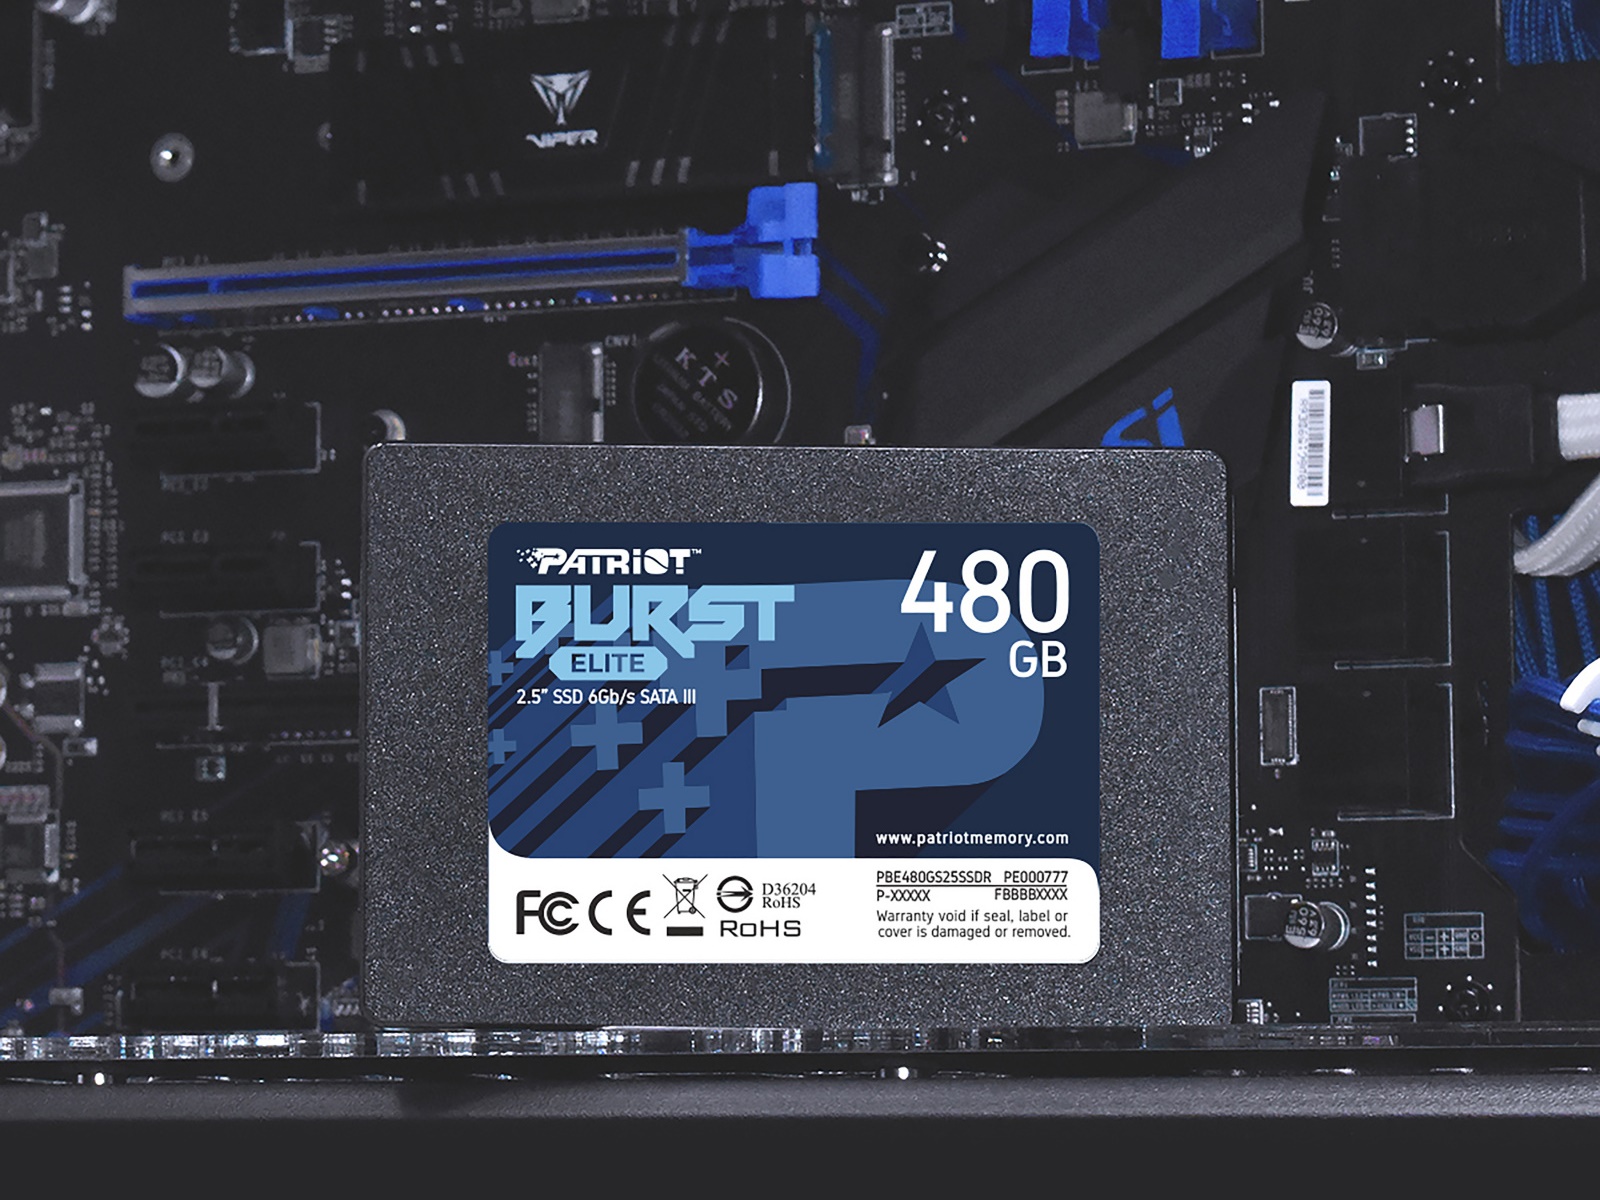 Interný SSD disk Patriot Burst Elite s kapacitou 480 GB ponúka vysoké prenosové rýchlosti, aby zabránil spomaľovaniu výkonu zo strany úložiska.